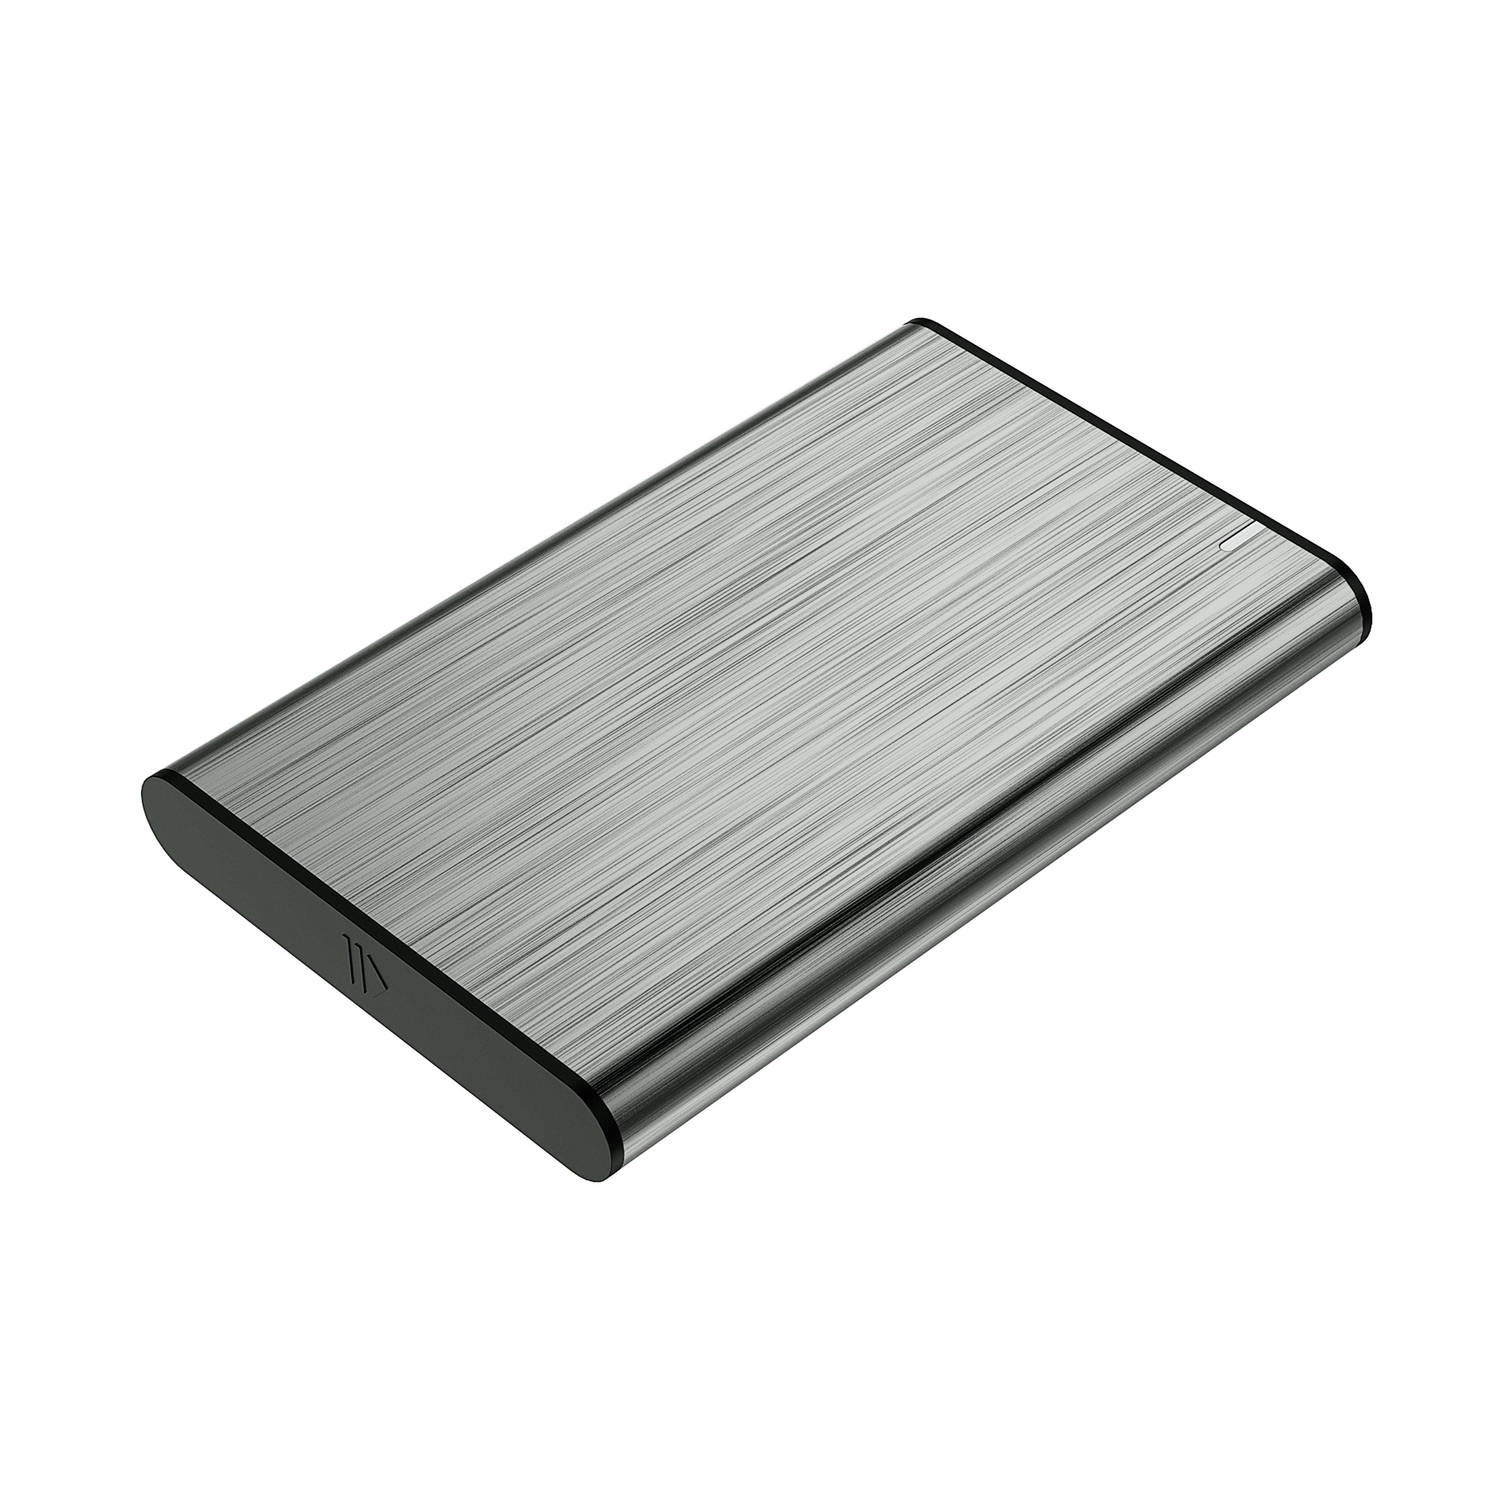 Aisens Boîtier Externe 2.5" pour Disques Durs 9.5mm SATA I - II et III vers USB 3.0/USB 3.1 GEN1 - Couleur Gris